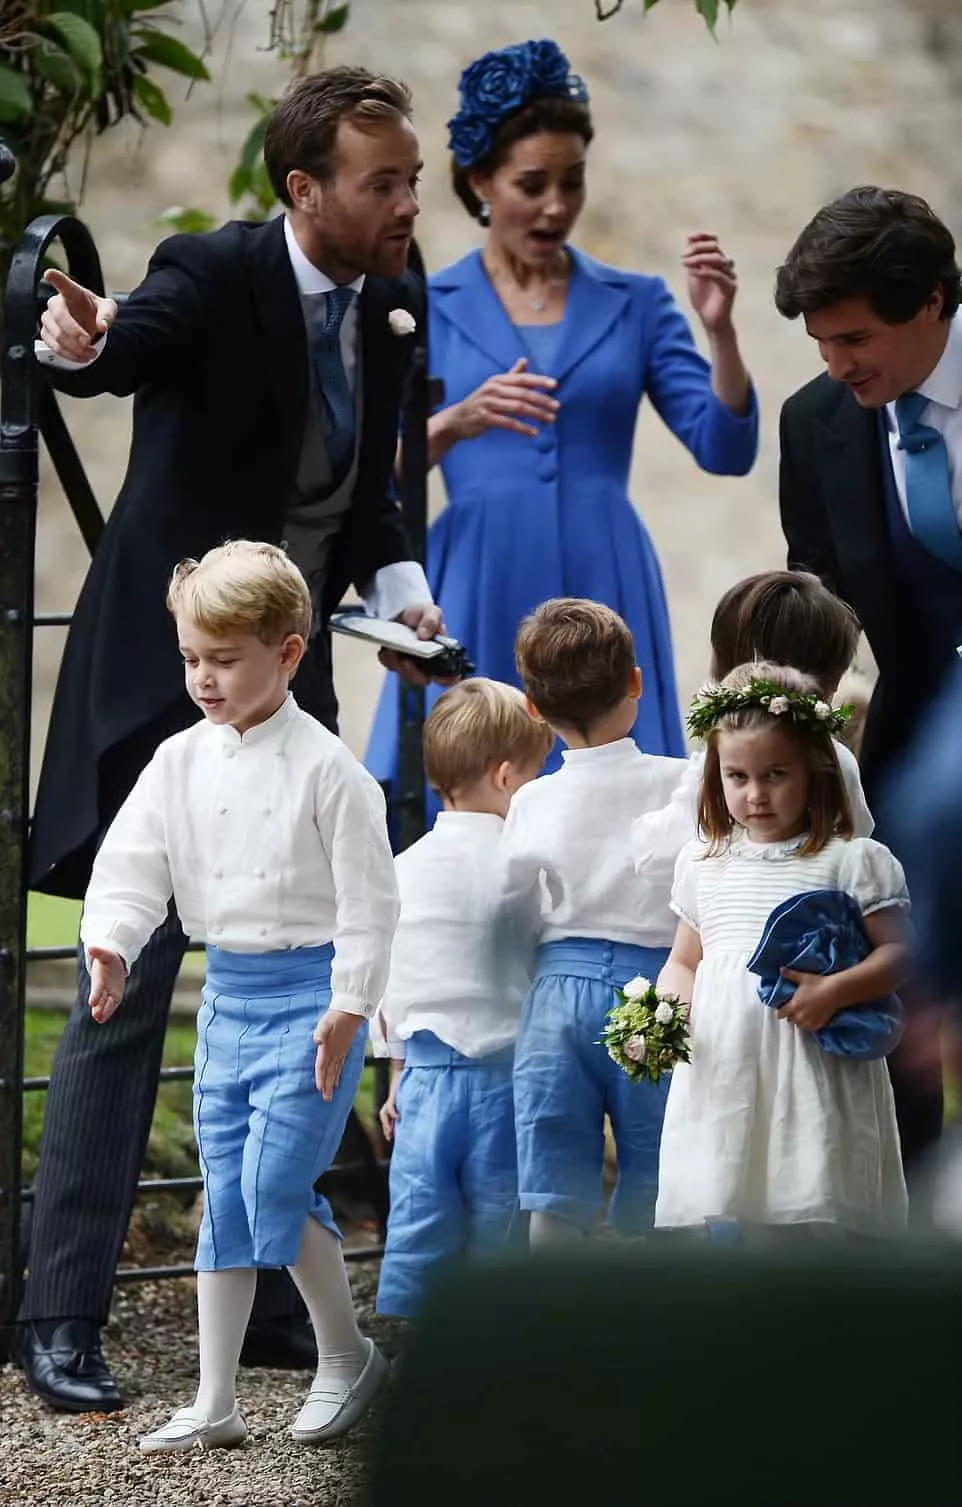 No casamento do príncipe Harry com Meghan Markle, Príncipe George e princesa Charlotte foram pajem